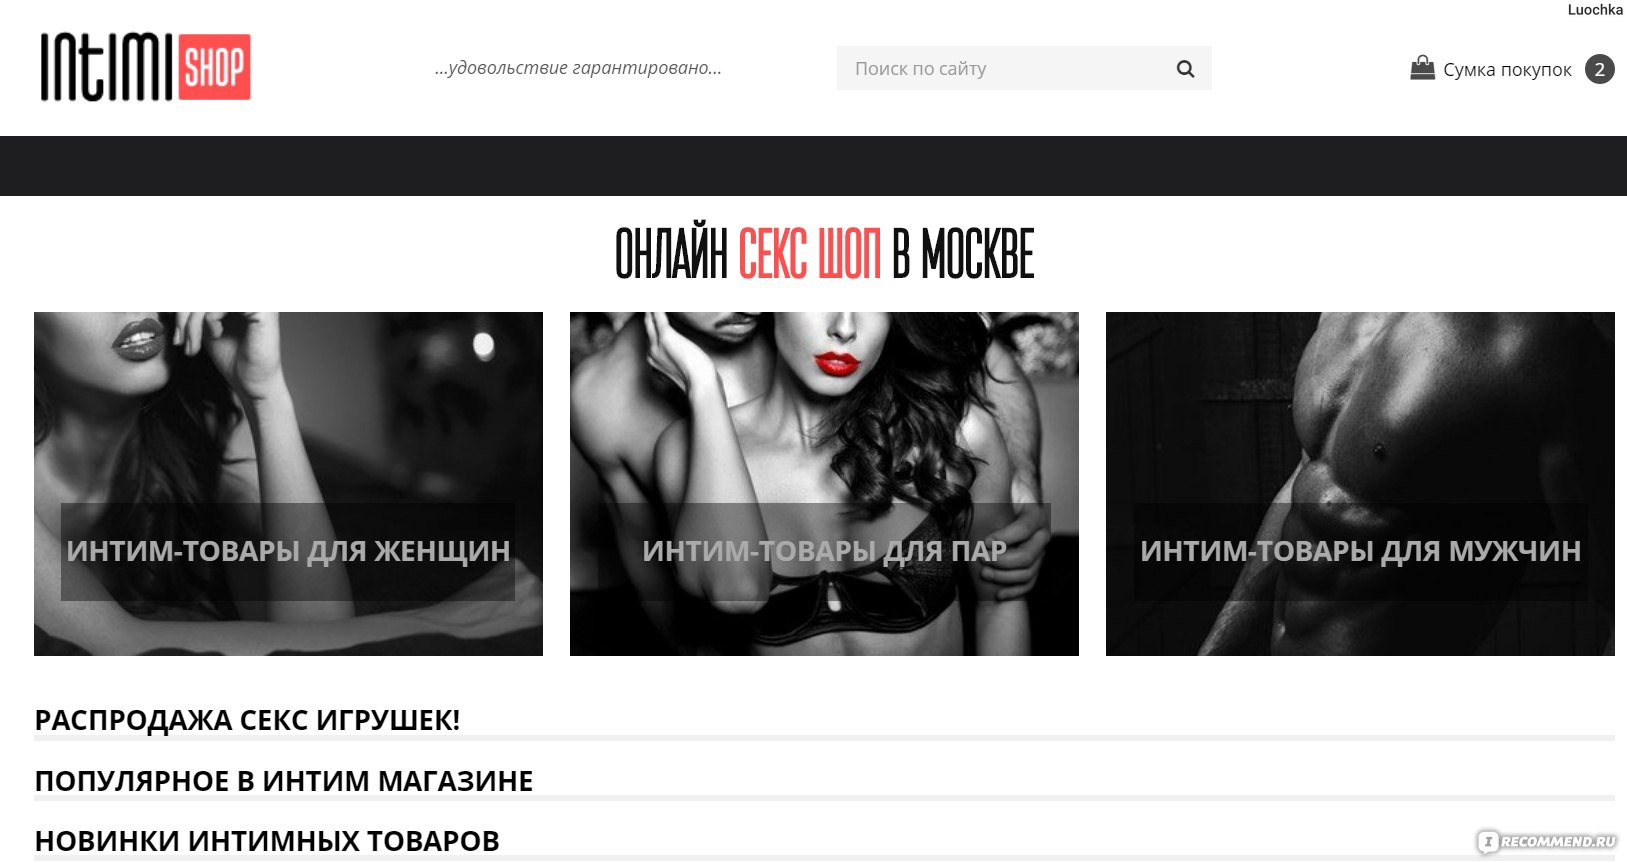 Секс-шоп nabanan 🍌 интим-магазин с доставкой по России